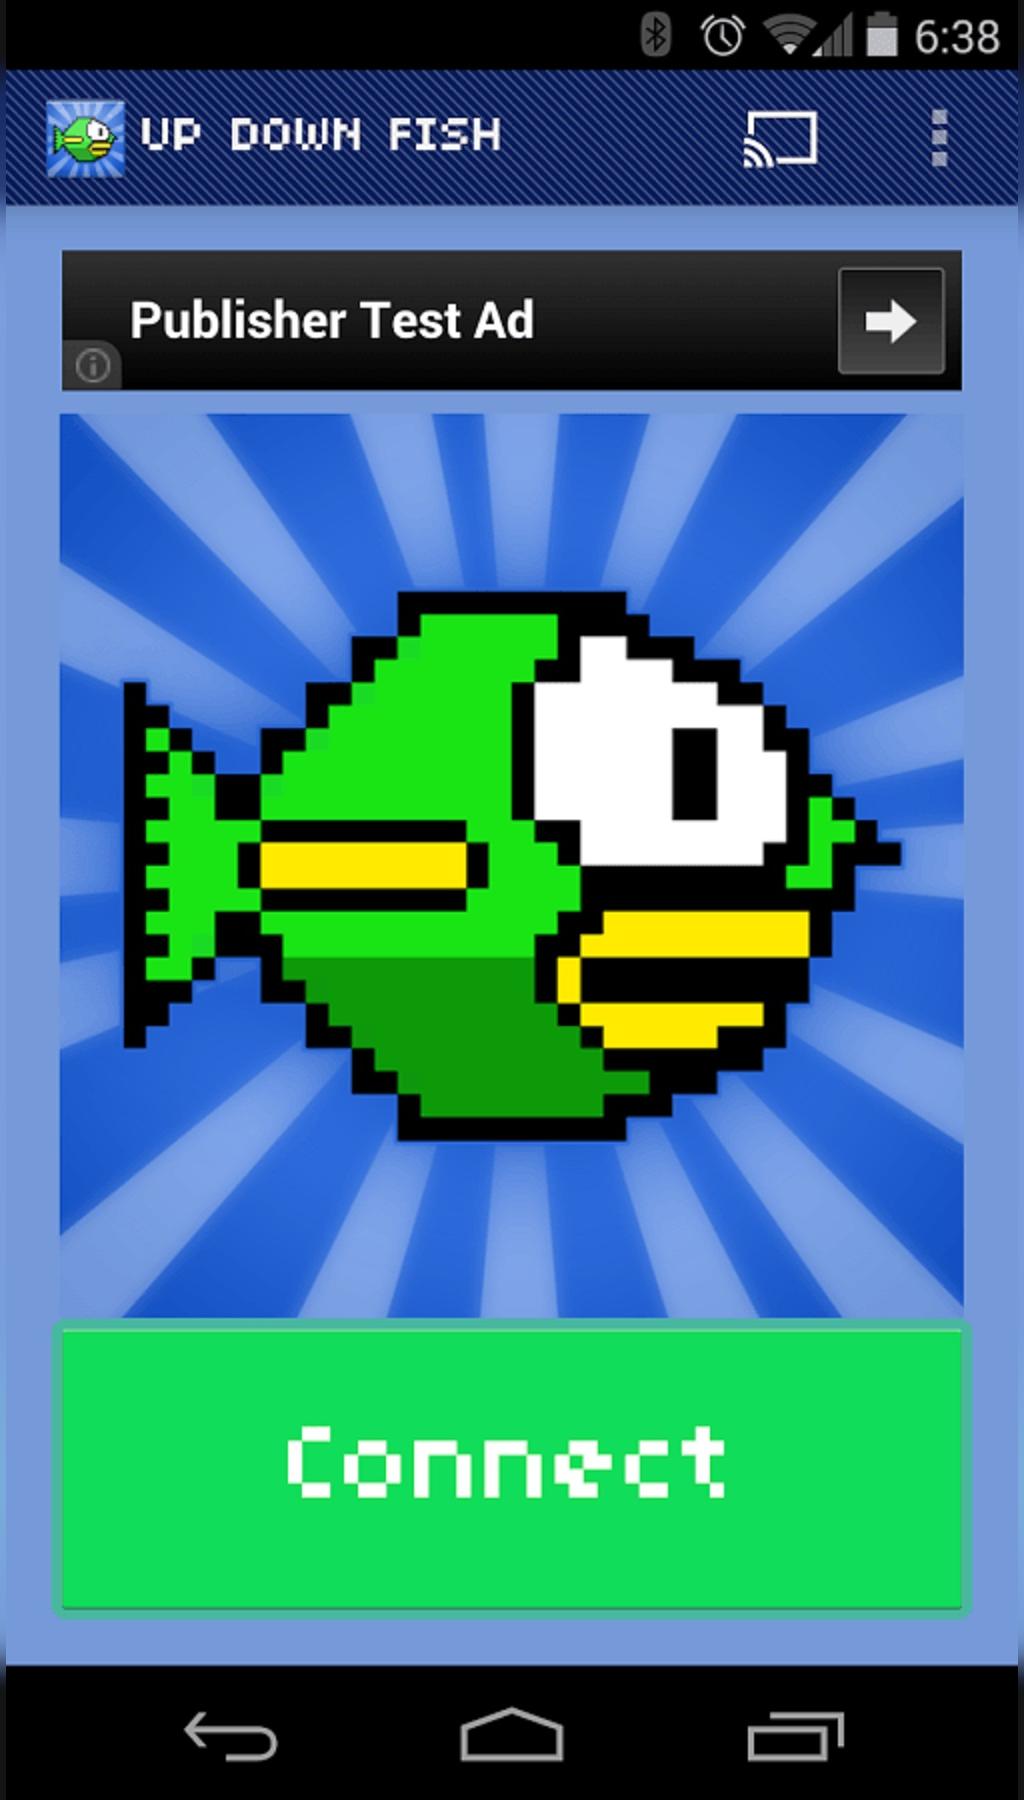  بازی Up Down Fish for Chromecast